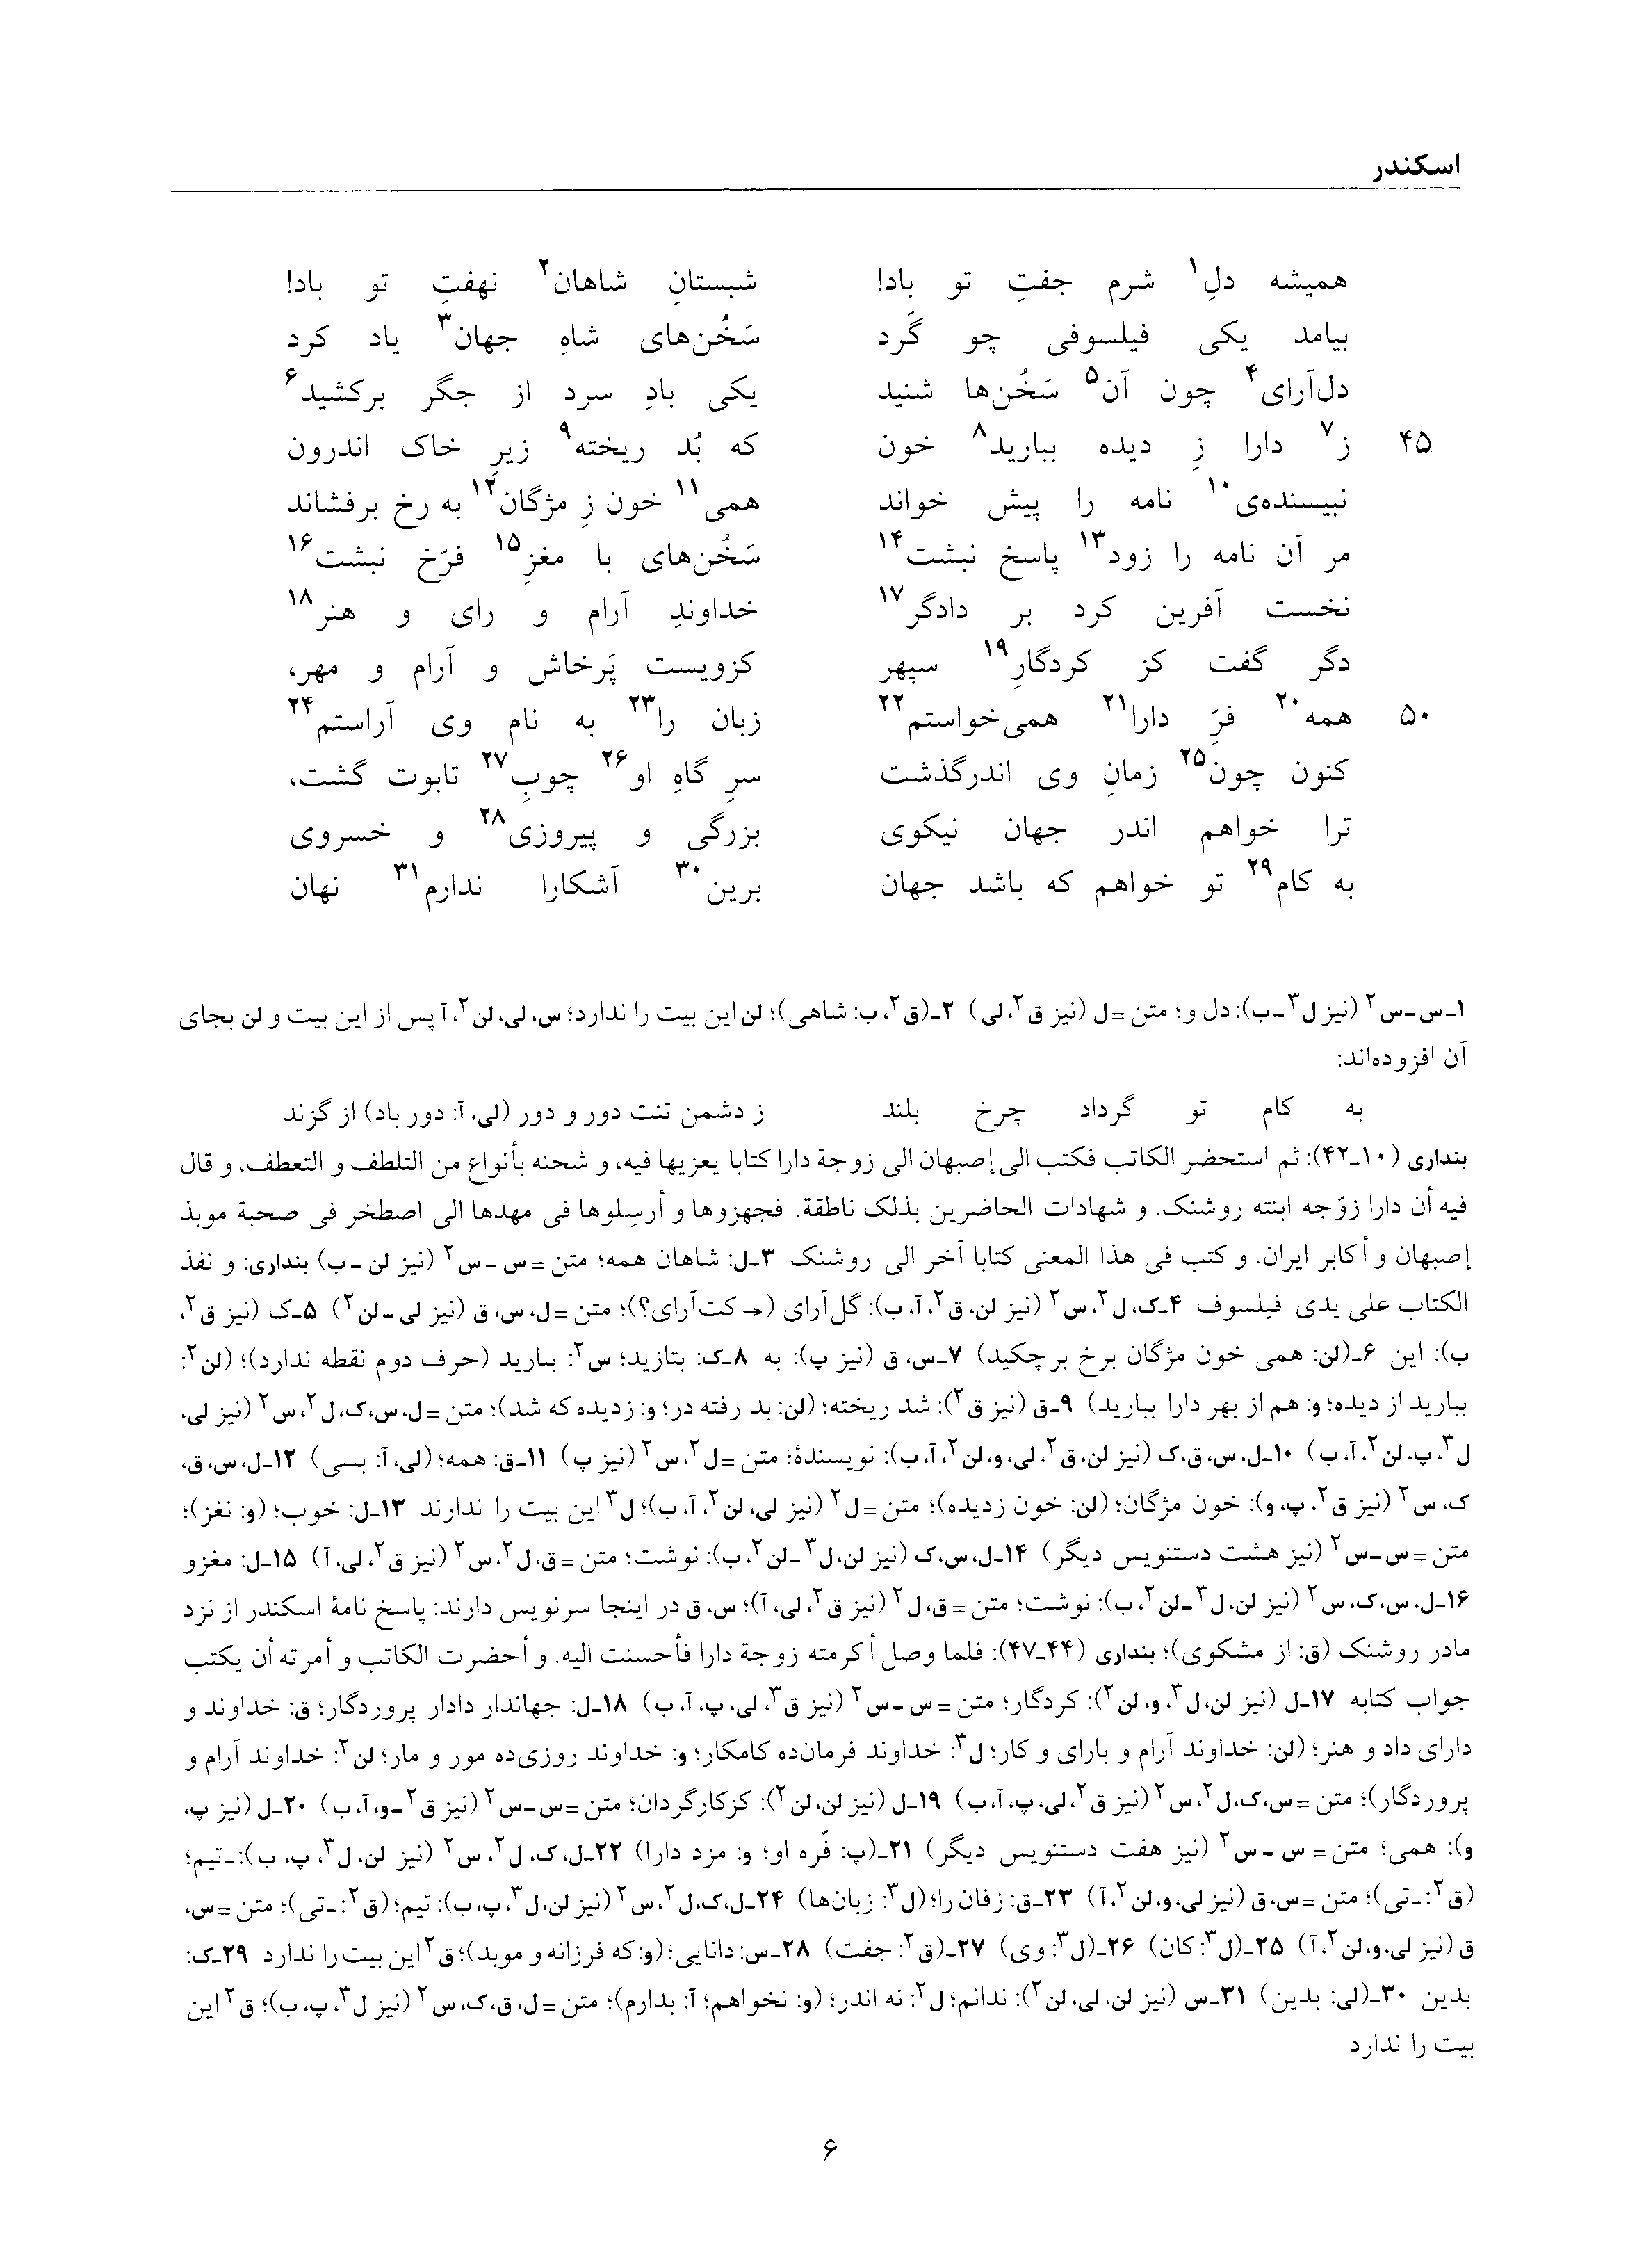 vol. 6, p. 6